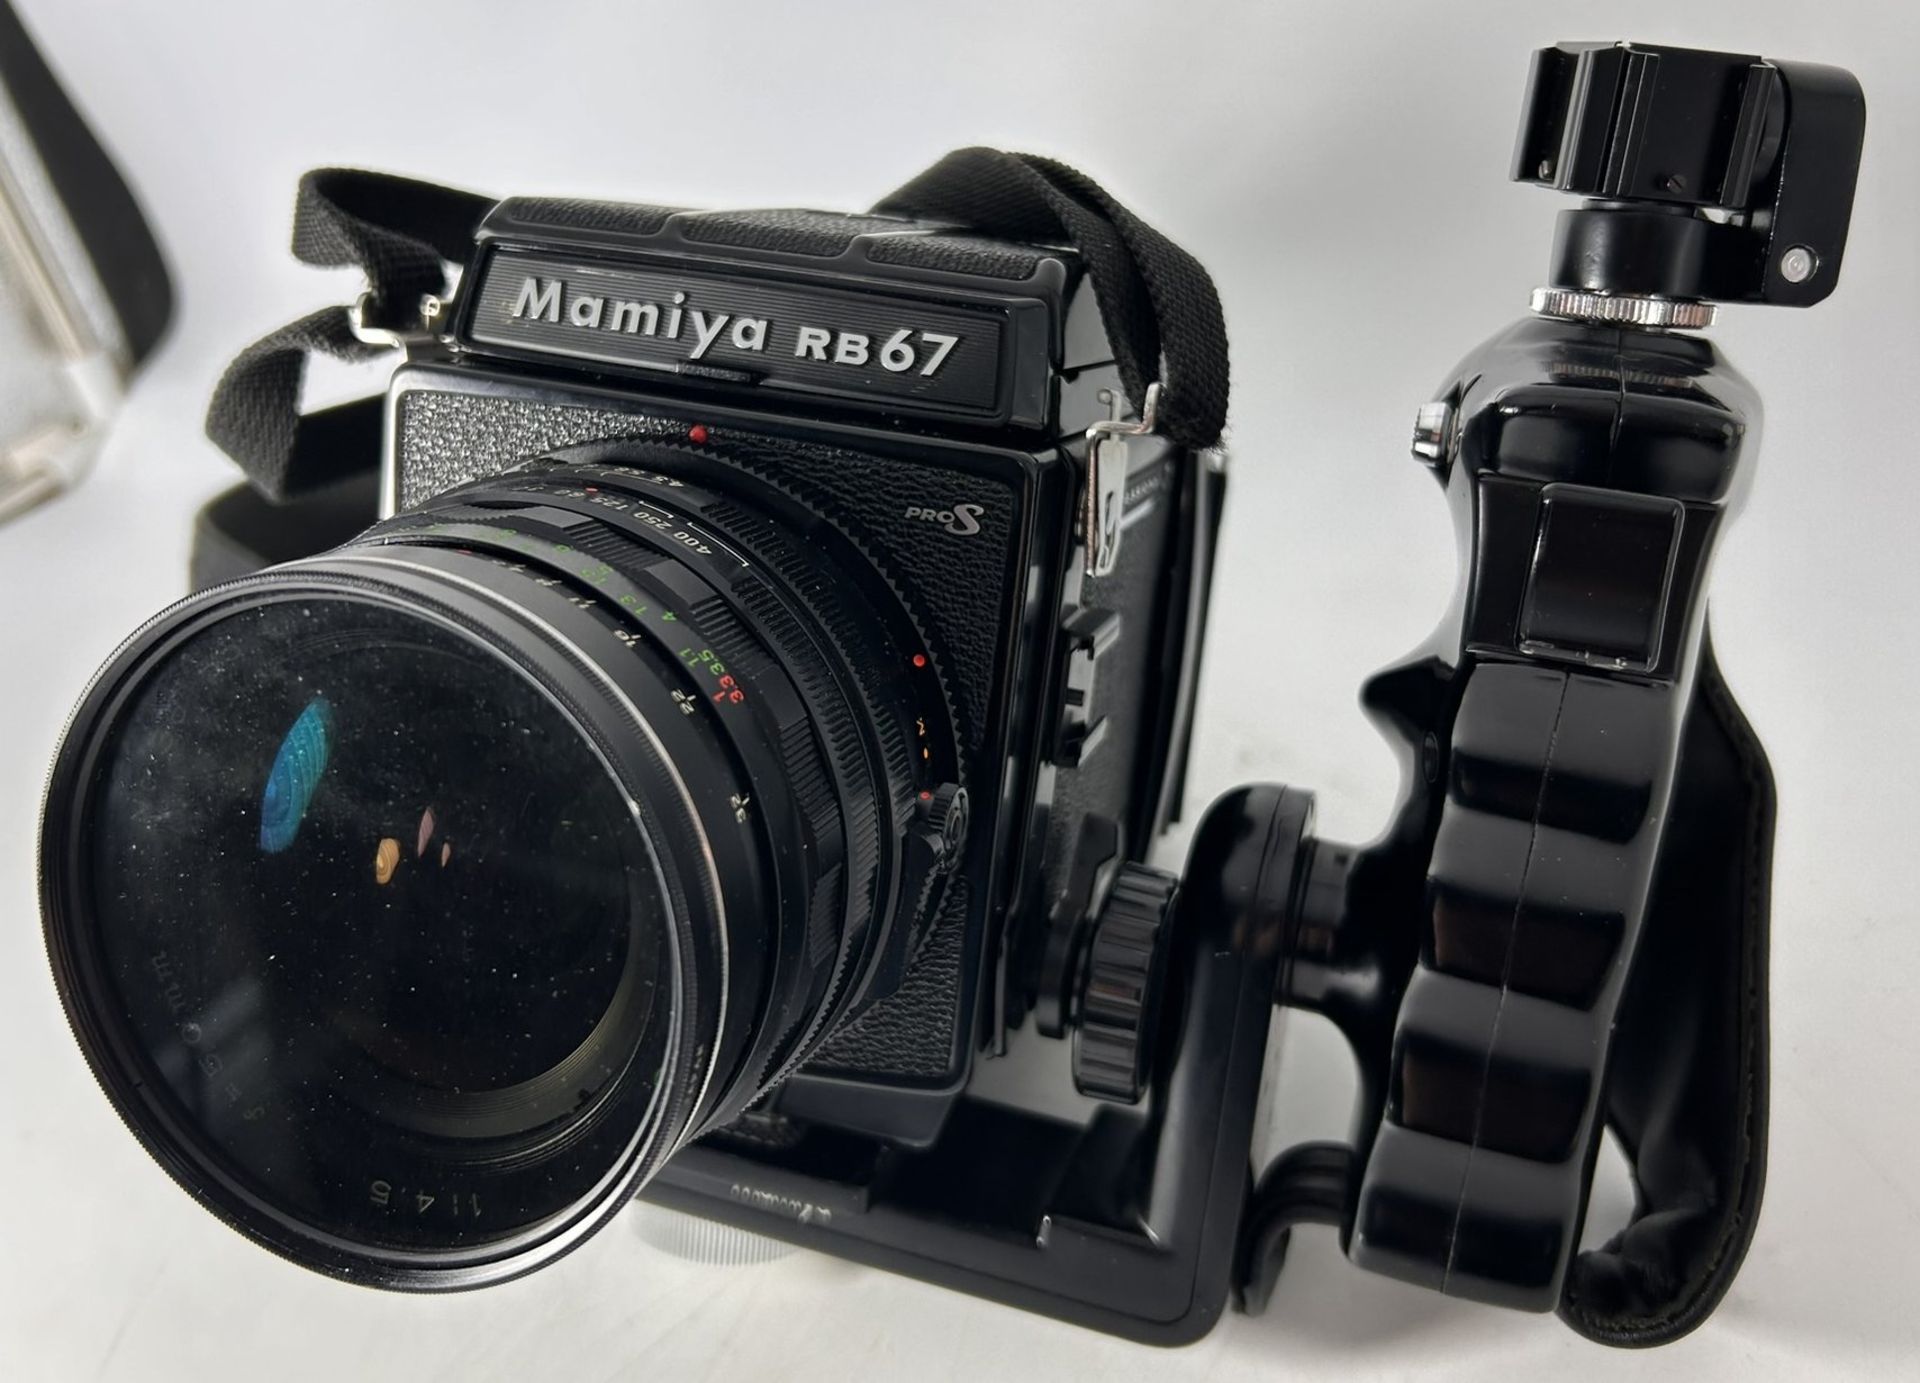 analoge  Profi Kamera "Mamya RB 67 S pro" in Alukoffer,3 Objektive , Wechsel-Filmbehälter und viel  - Bild 3 aus 17